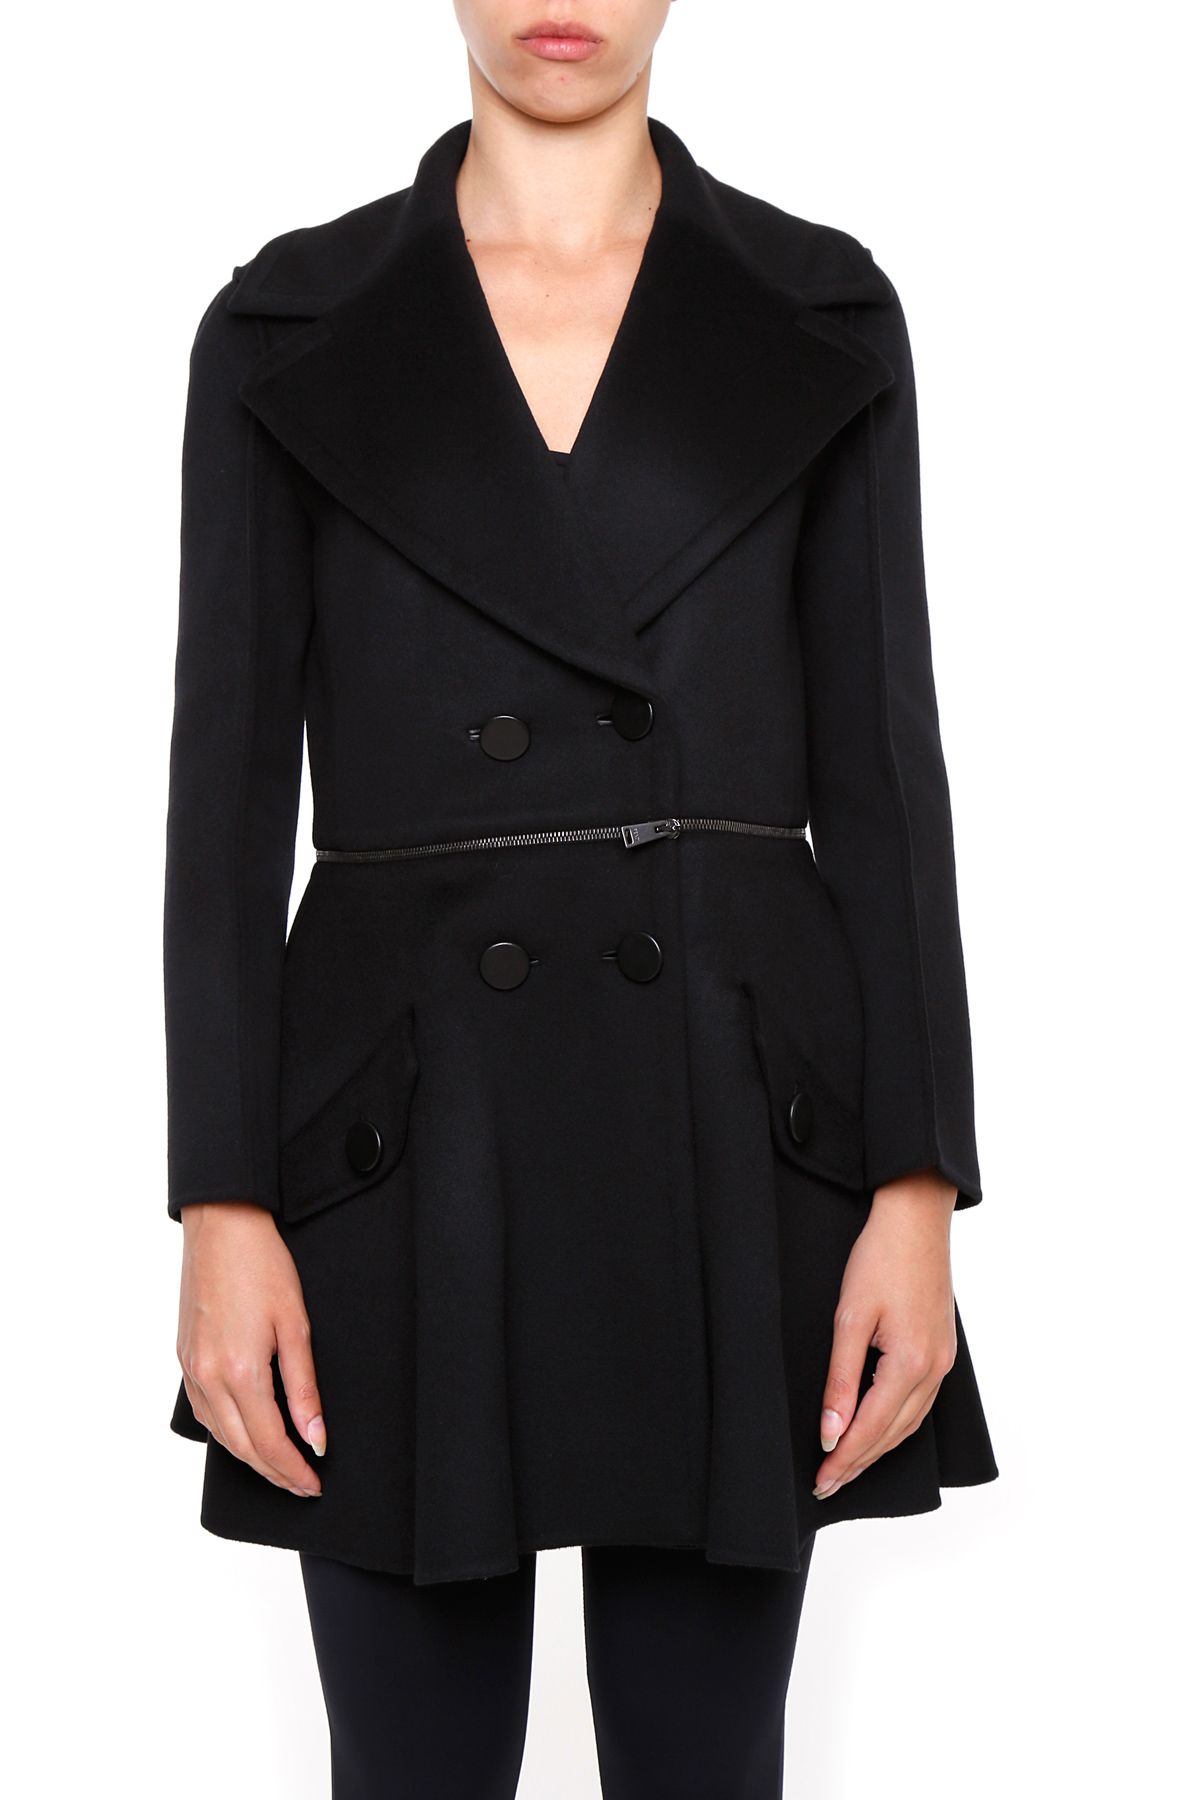 Fendi - Coat - BLACK+BLACK|Nero, Women's Coats | Italist